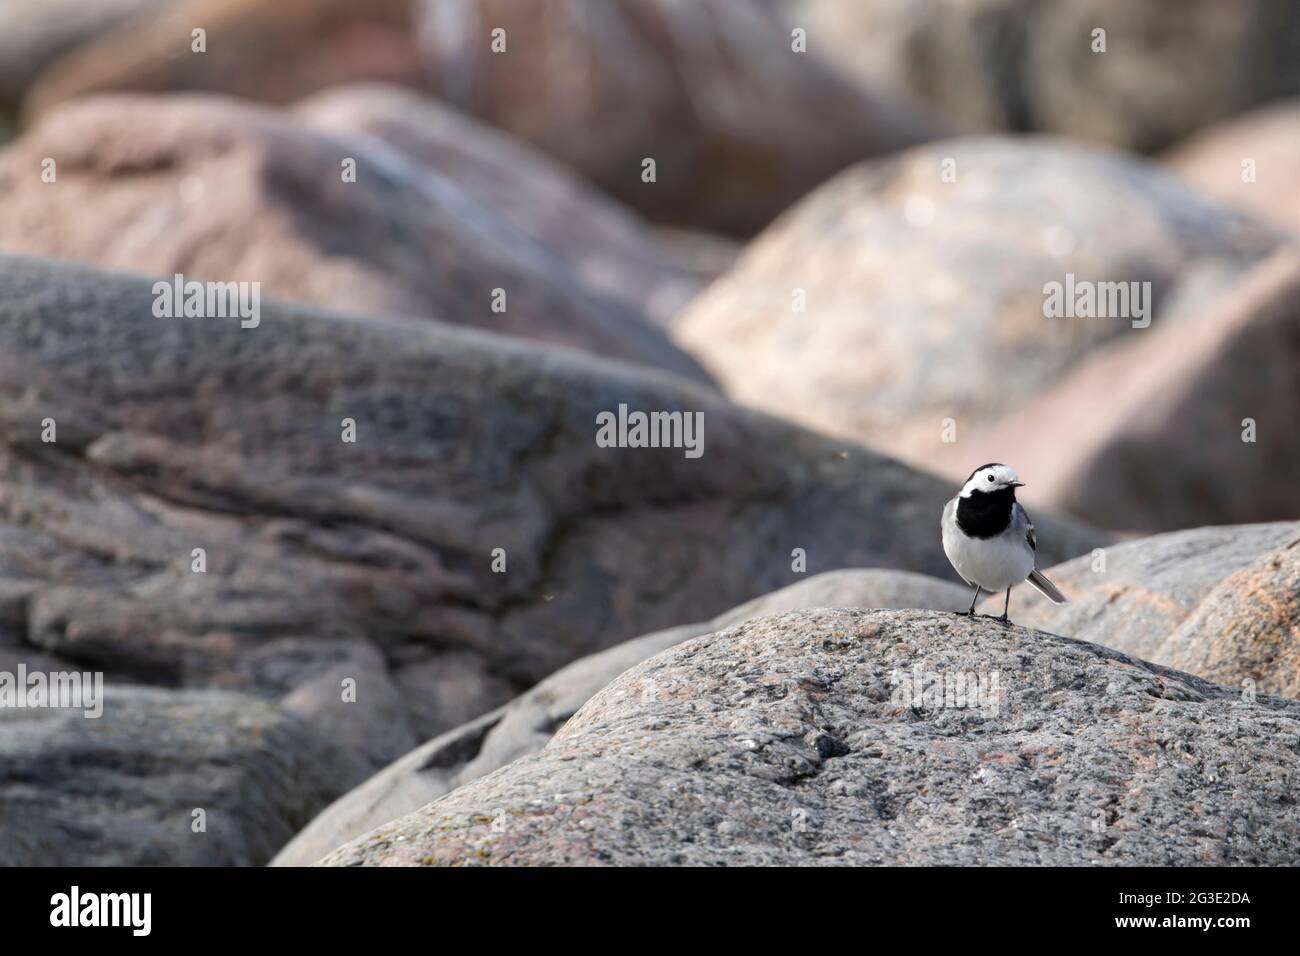 Kleine entzückende singvögel, weiße Bachstelze, Motacilla alba, die auf einem Granitfelsen in estnischer Natur steht Stockfoto